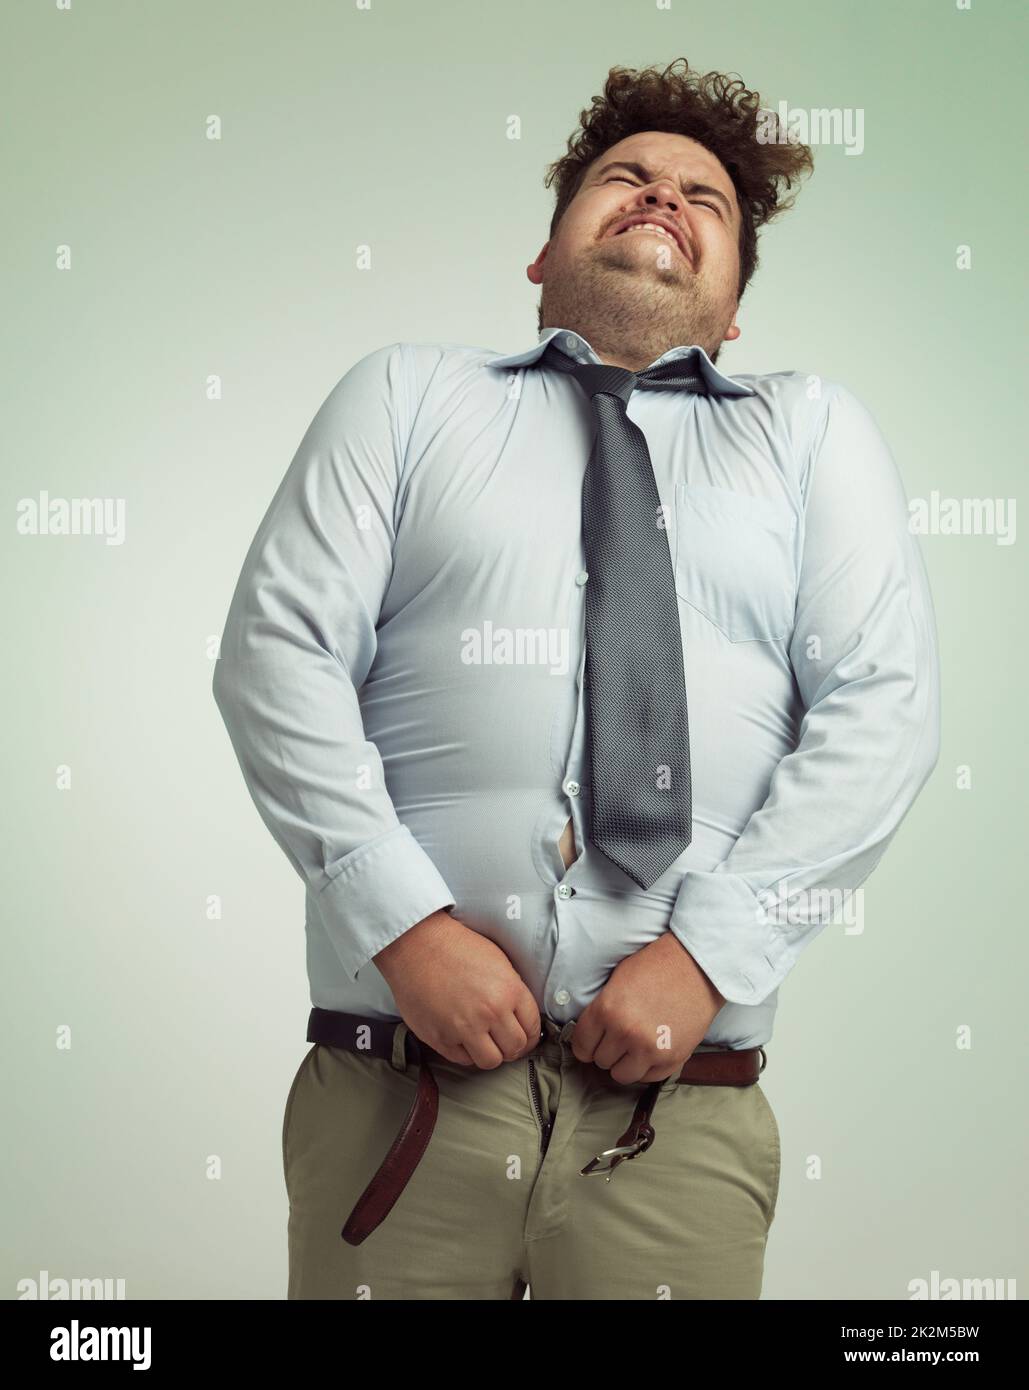 Bereit, seine Hose zu schließen. Humorvolle Studioaufnahme eines übergewichtigen Geschäftsmannes, der versucht, seine Hose zu knöpfen. Stockfoto